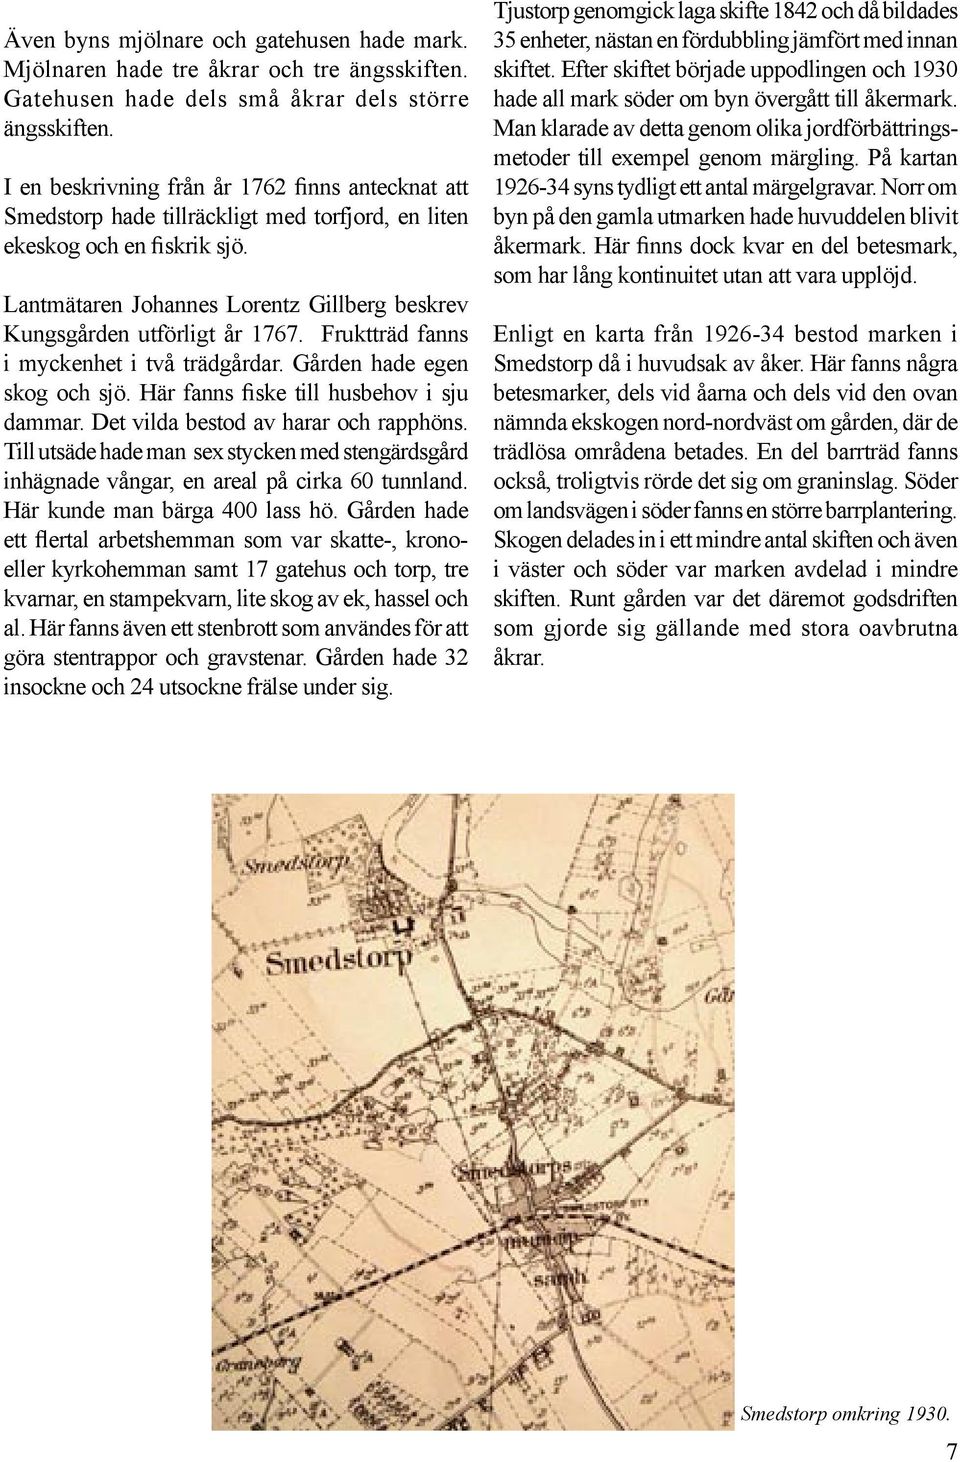 Lantmätaren Johannes Lorentz Gillberg beskrev Kungsgården utförligt år 1767. Fruktträd fanns i myckenhet i två trädgårdar. Gården hade egen skog och sjö. Här fanns fiske till husbehov i sju dammar.